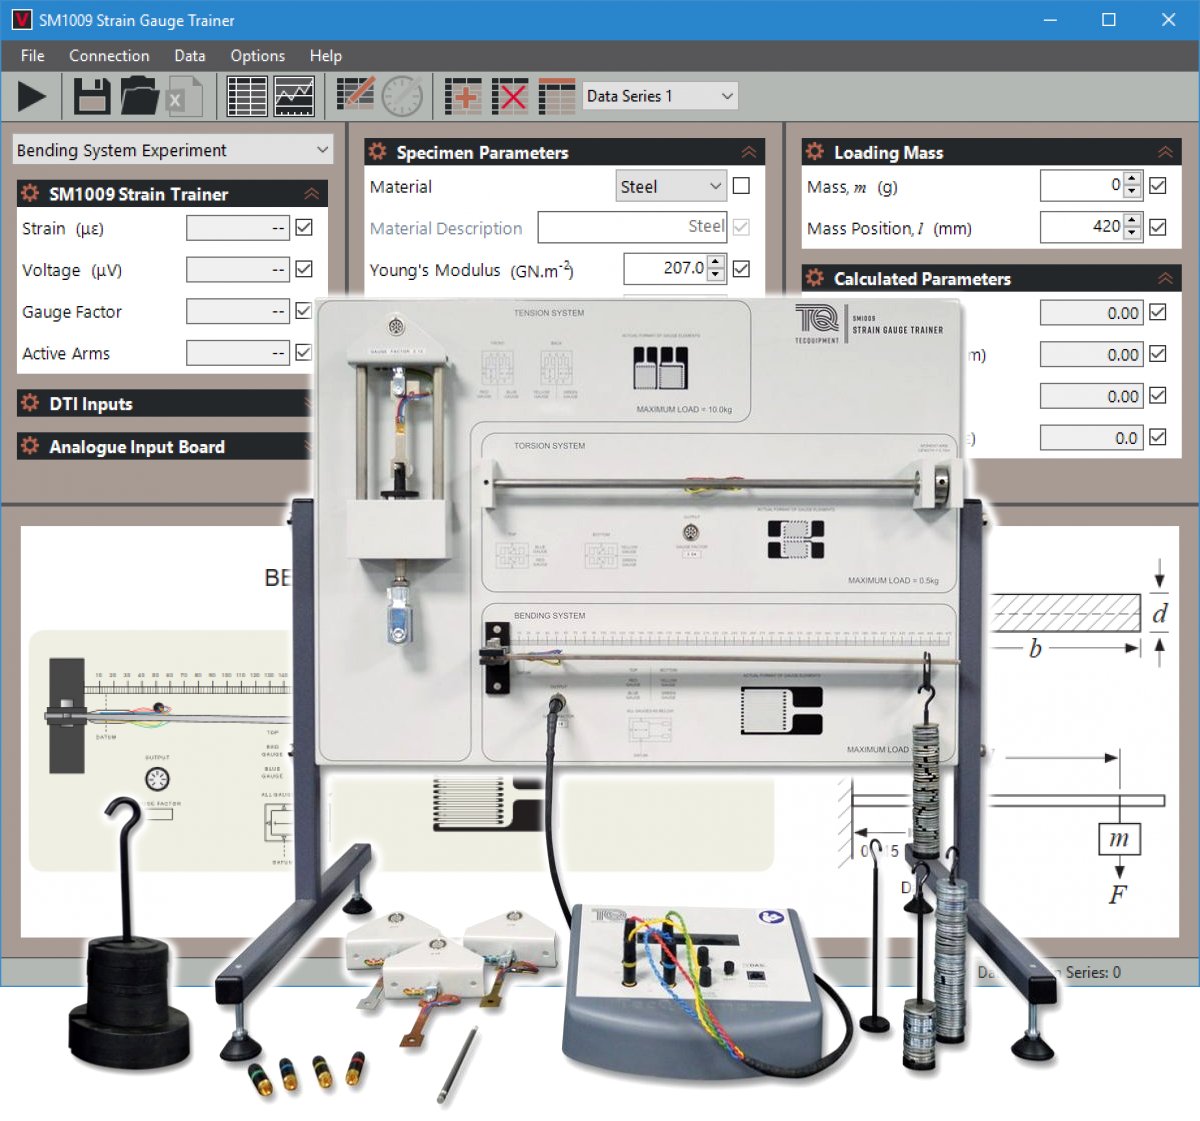 Entrenador sobre la configuración, uso y aplicaciones de strain gauges (galgas extensiométricas) SM1009